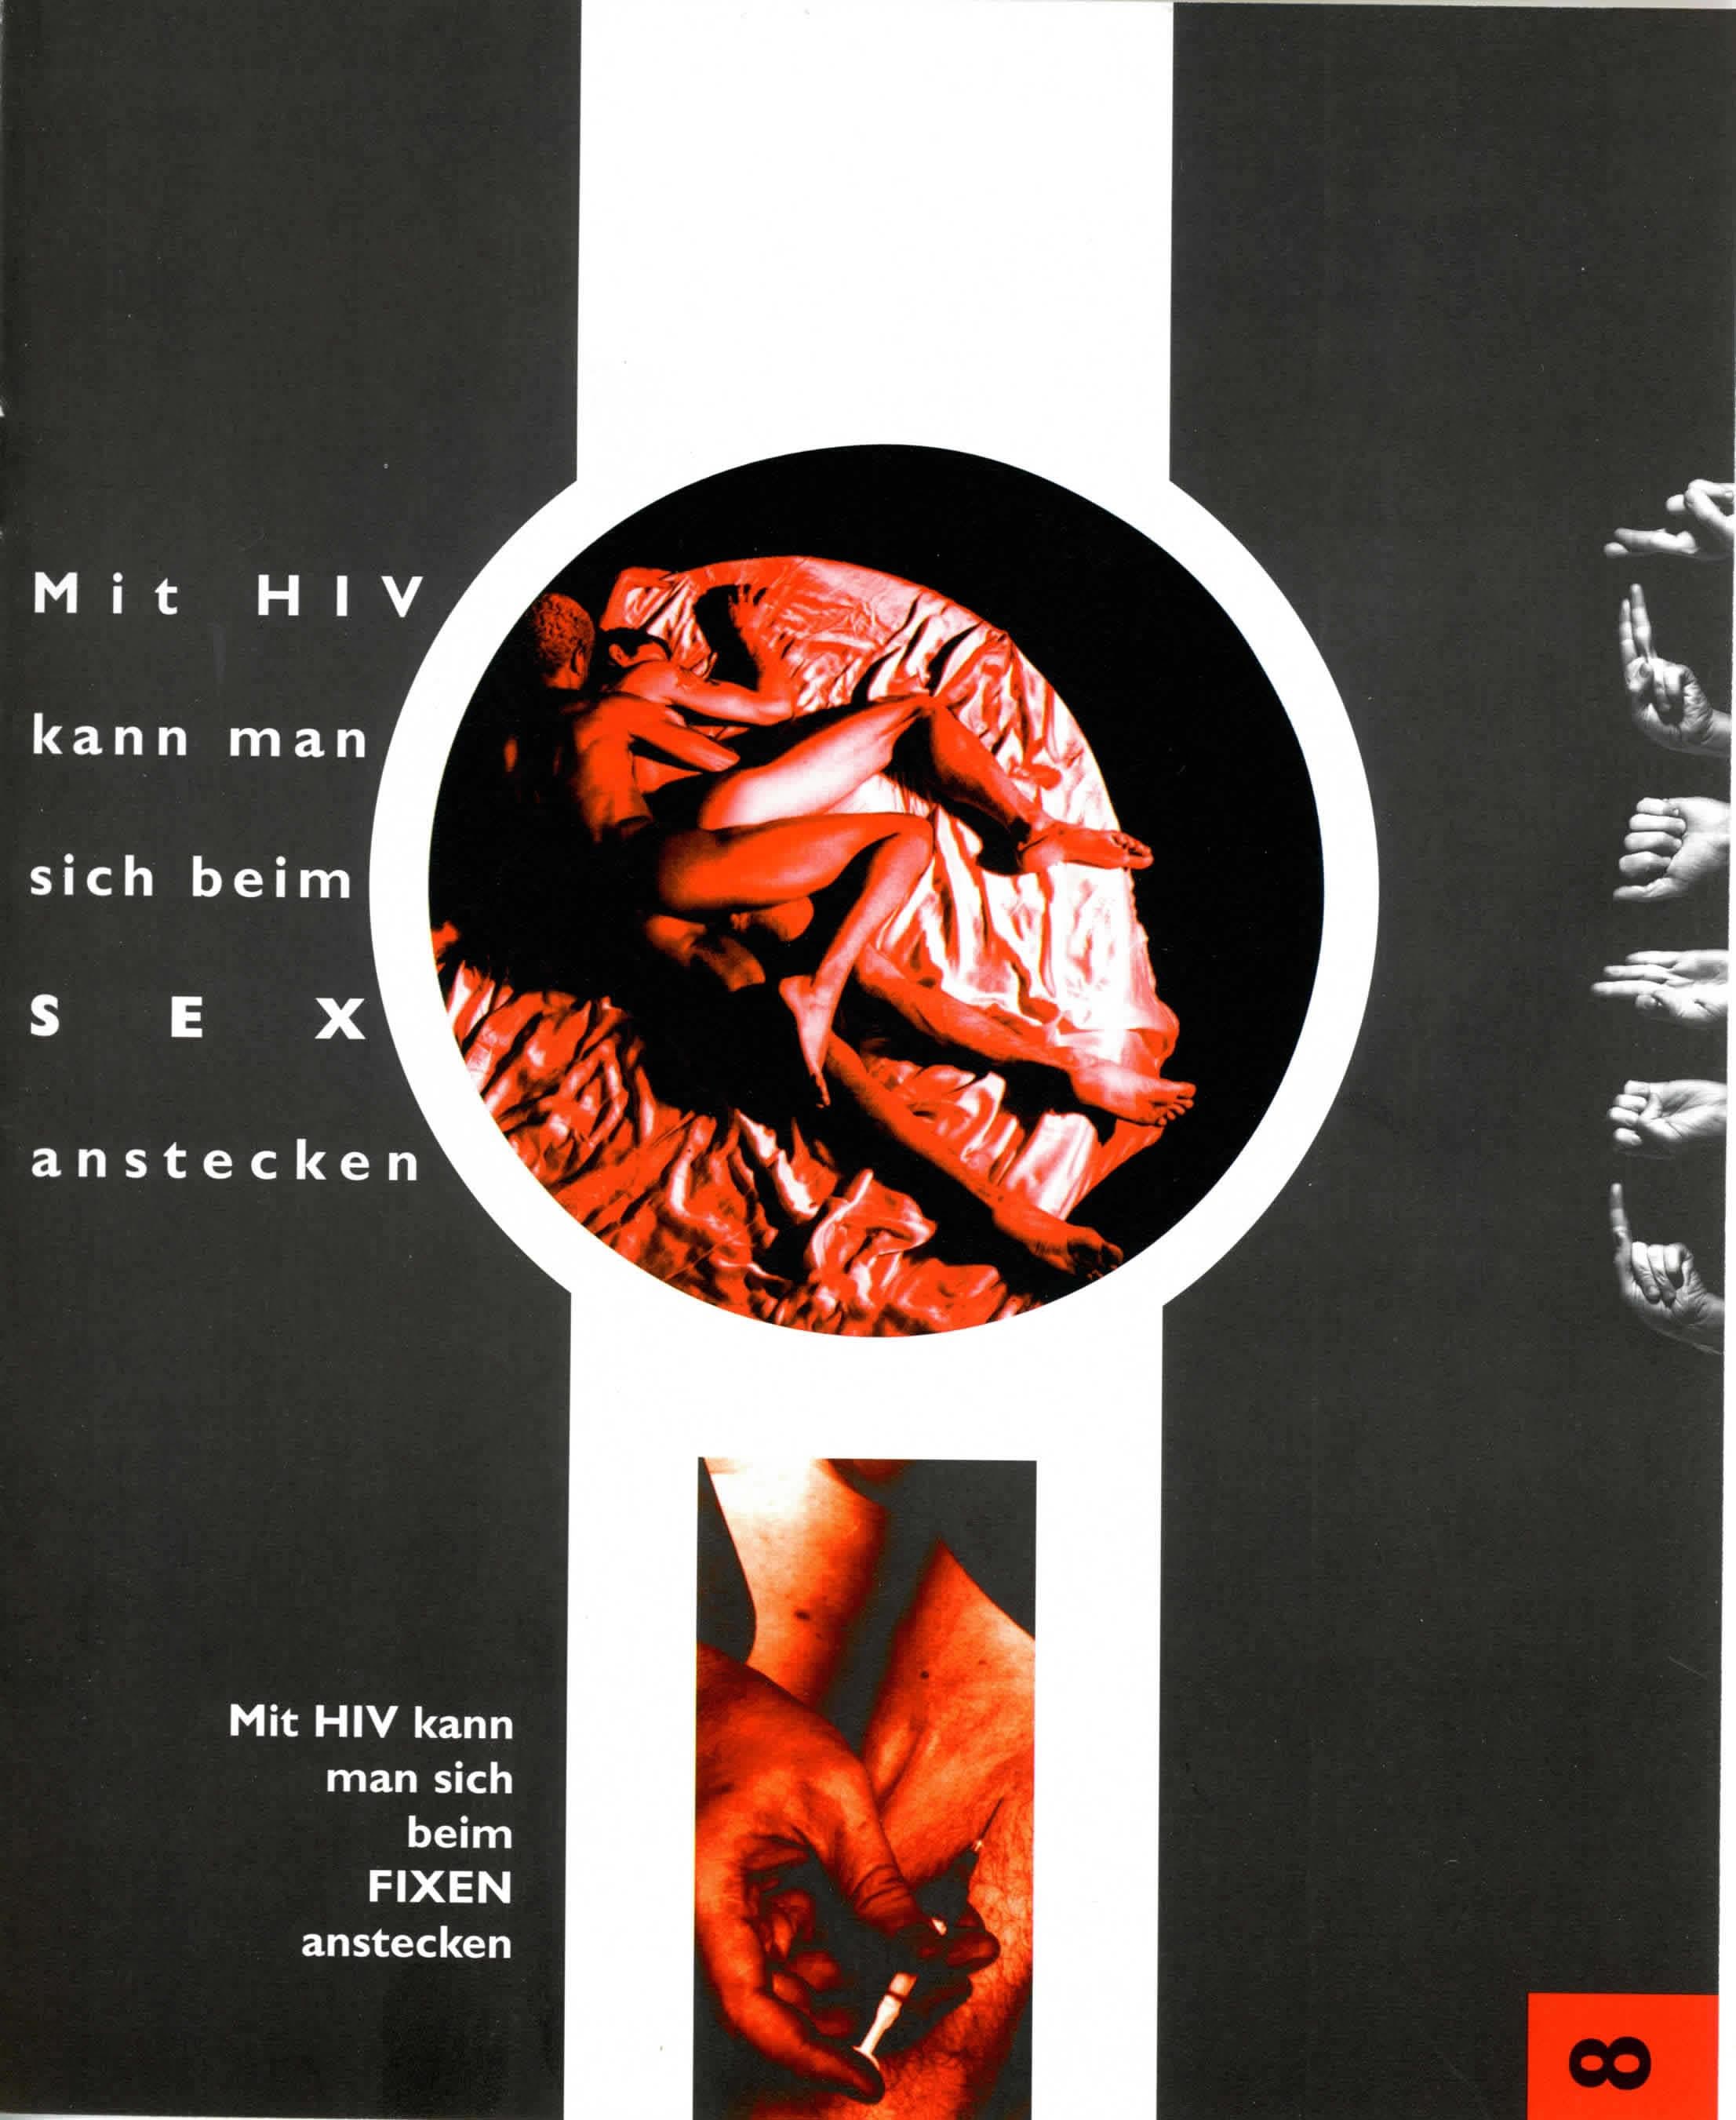 Mit HIV kann man sich beim SEX anstecken. Mit HIV kann man sich beim FIXEN anstecken.